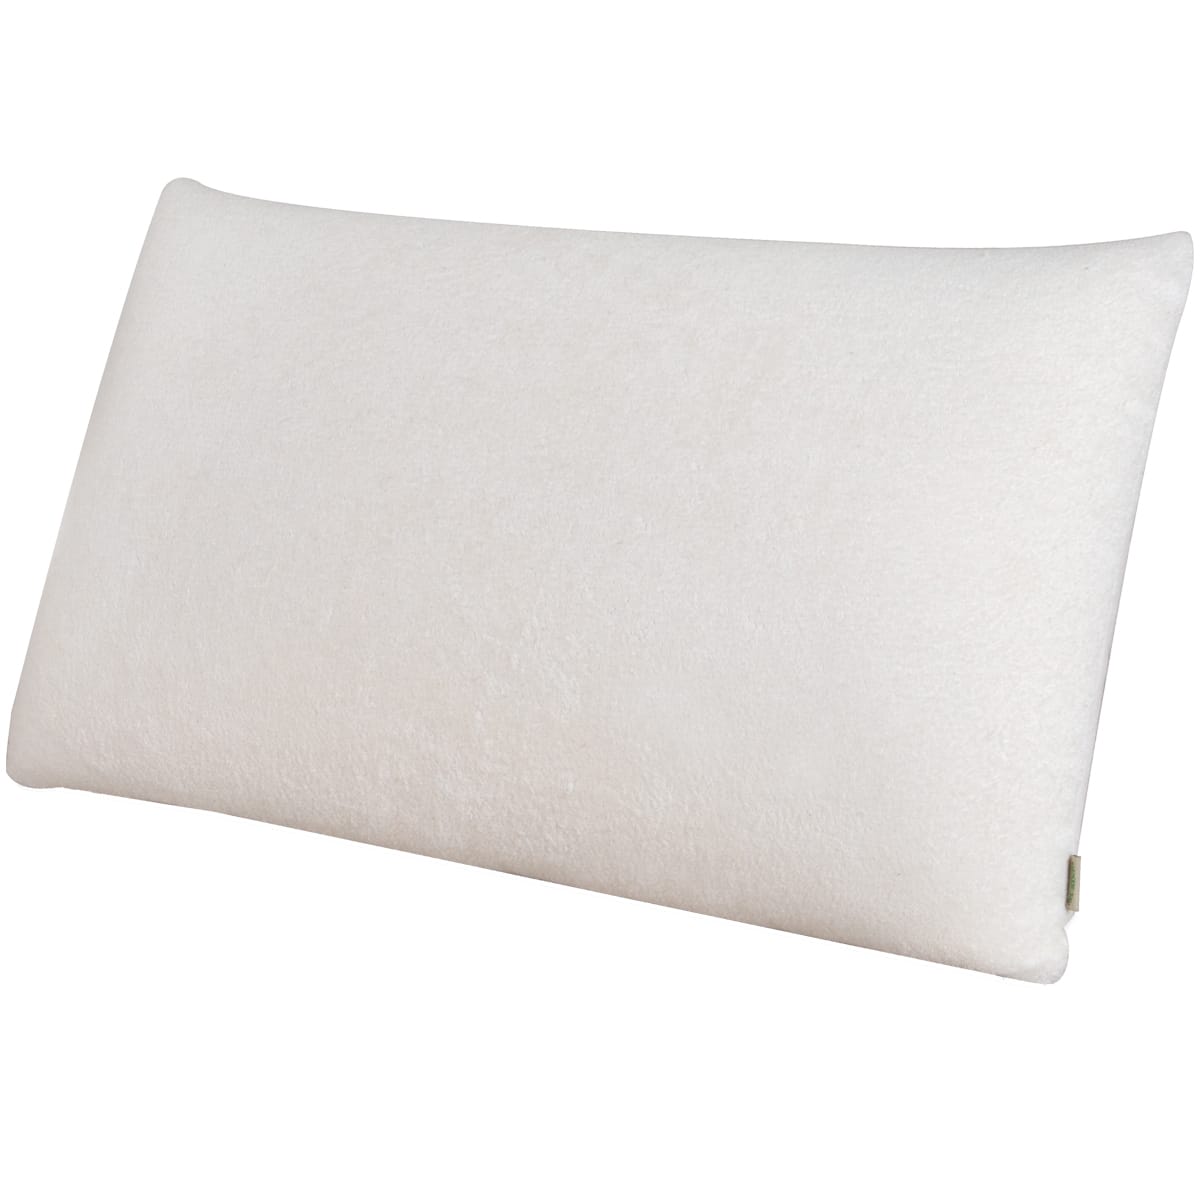 NaturaPedic Plushious Pillow by Natura